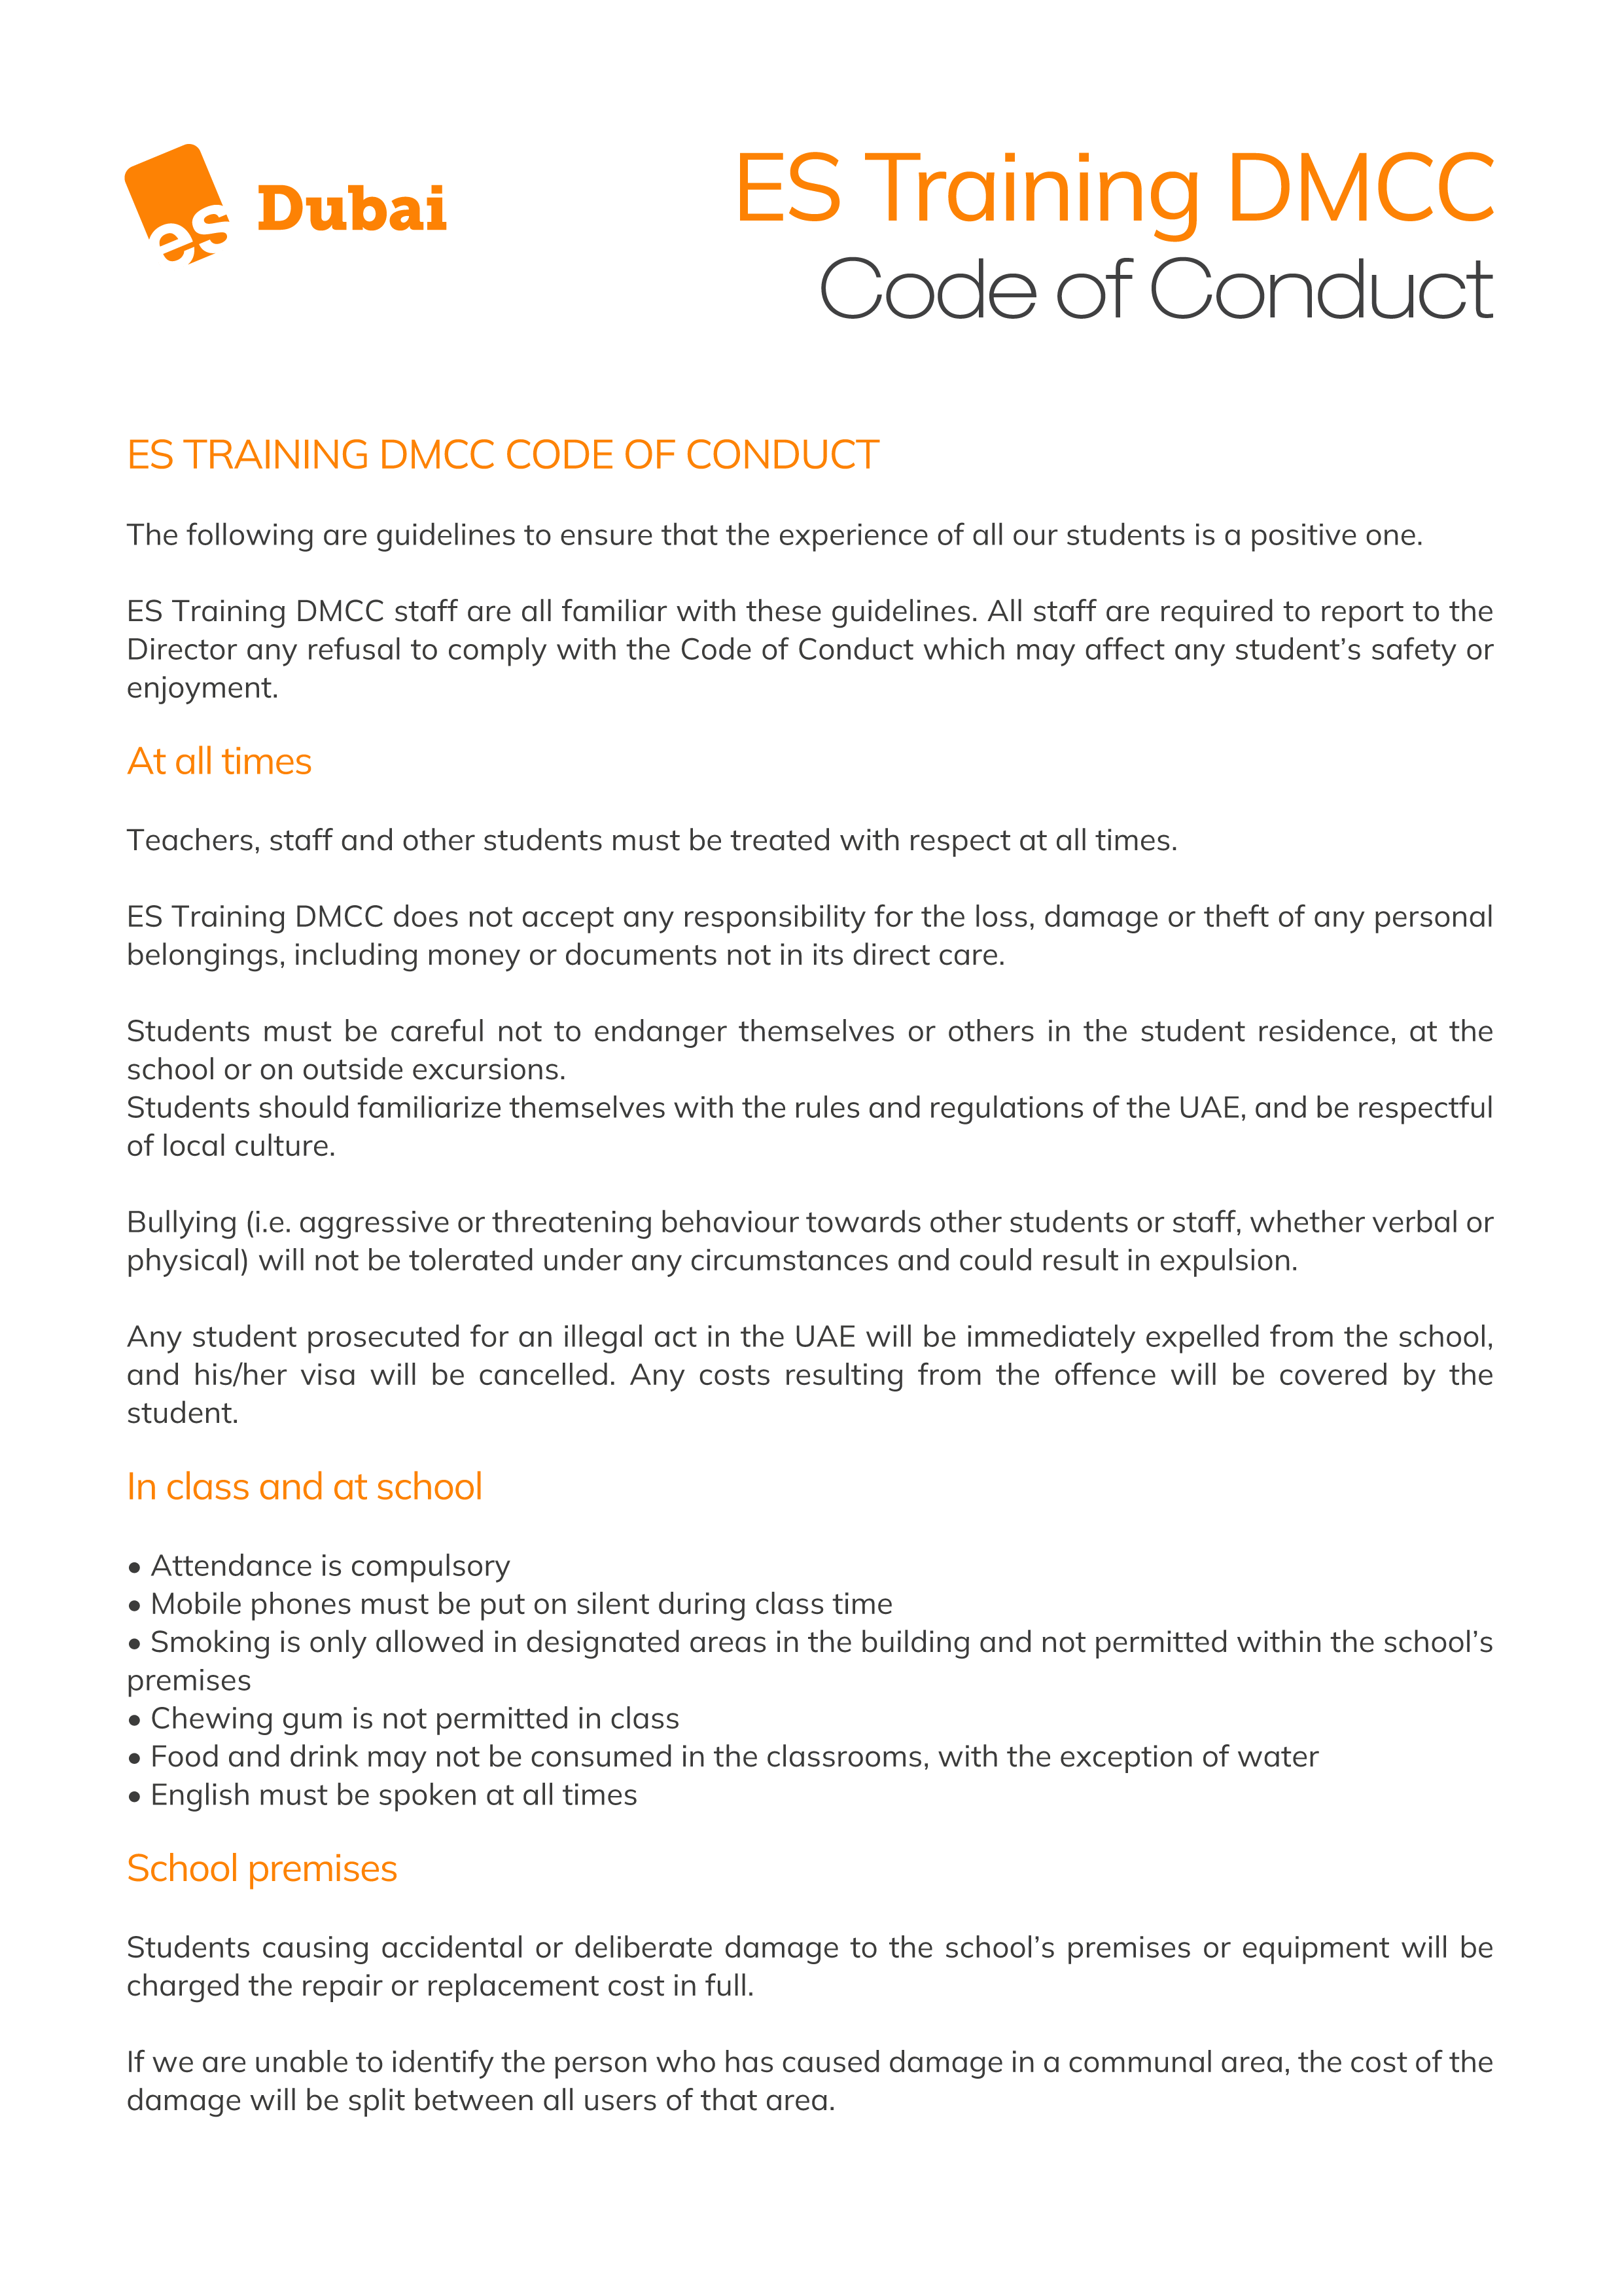 ES Dubai - es_code_conduct_DMCC